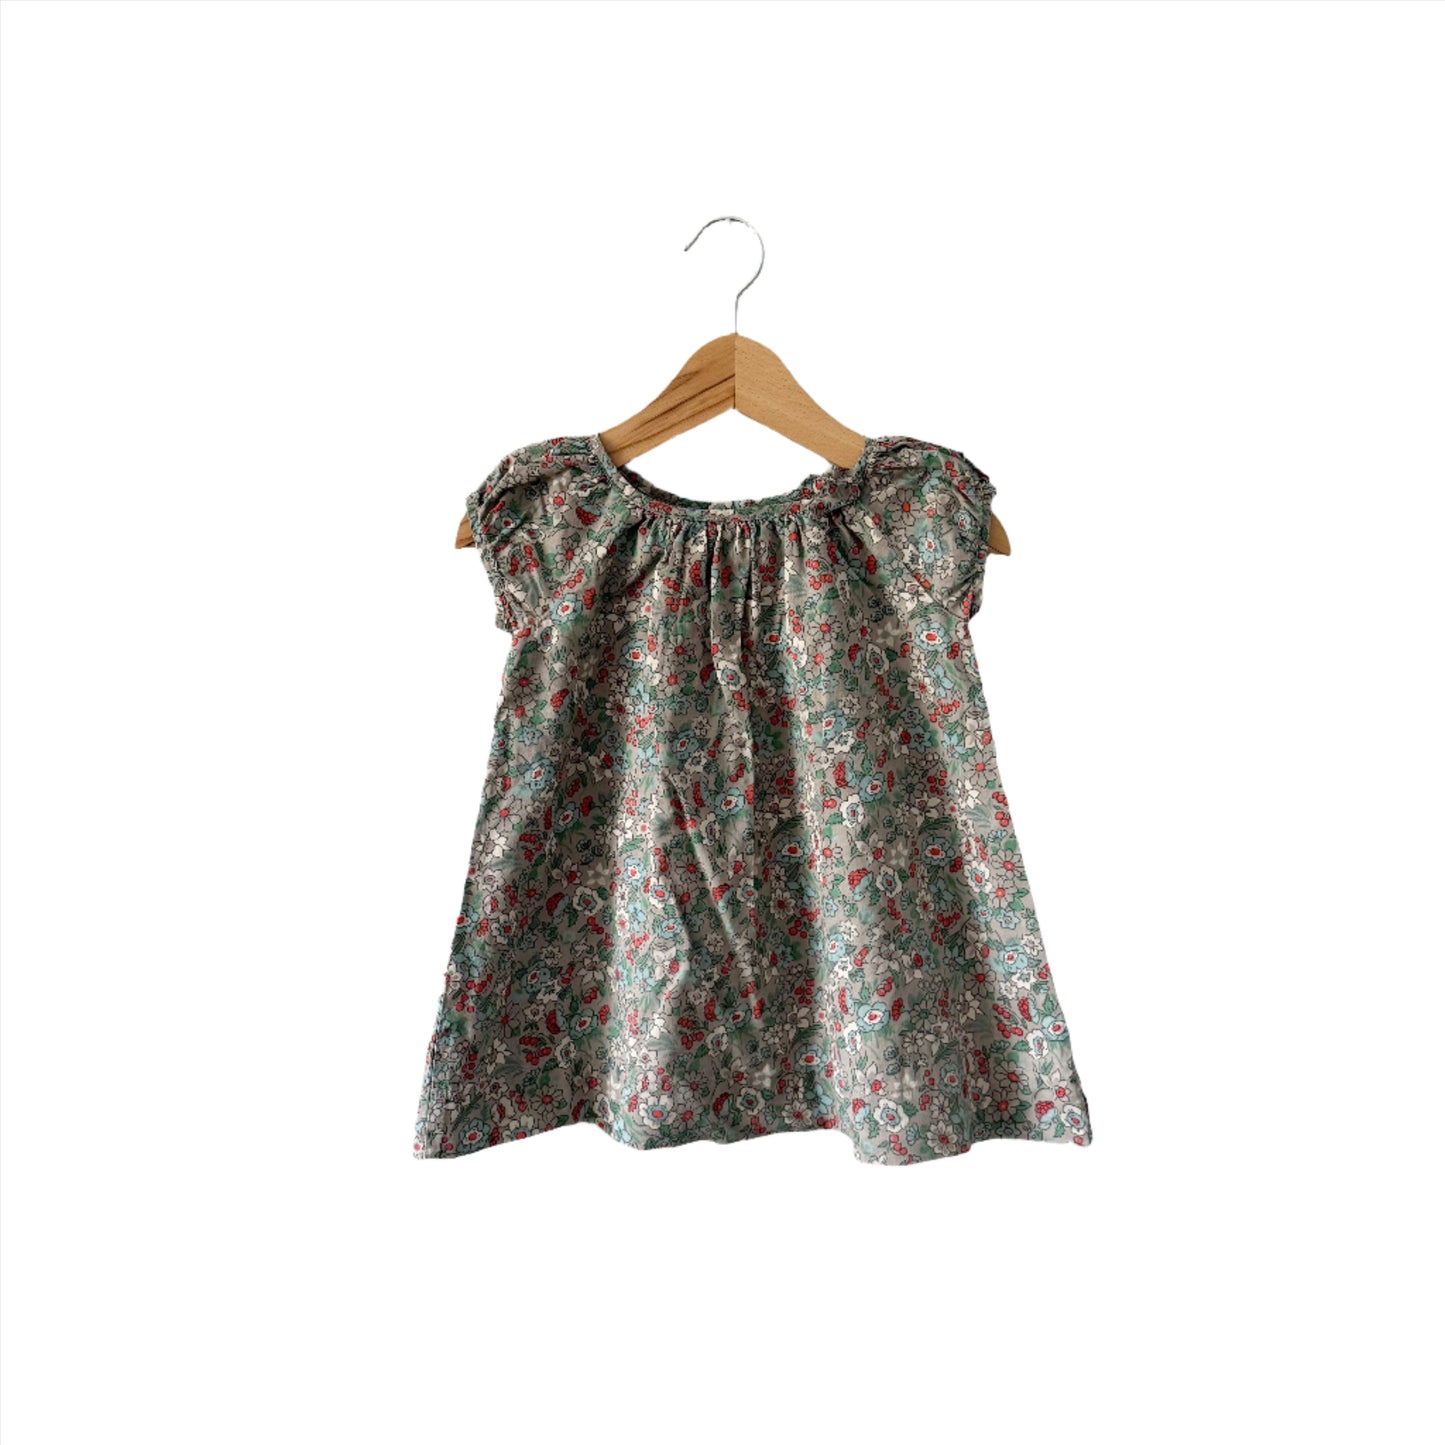 Gap / Grey x floral tank blouse dress / 6-12M